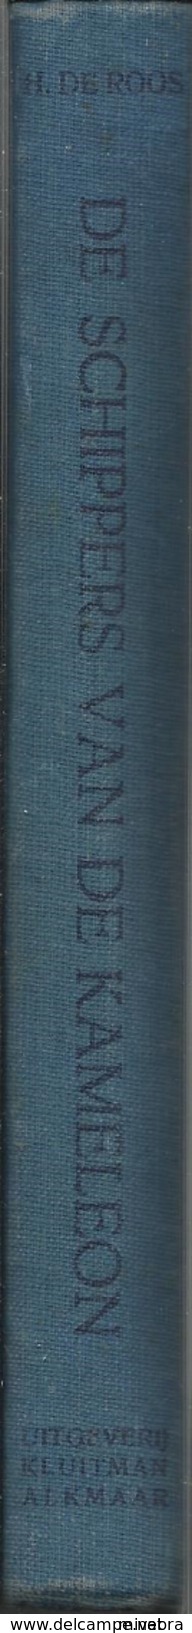 1e Druk 1949 DE SCHIPPERS VAN DE KAMELEON / H. DE ROOS / Uitg. KLUITMAN ALKMAAR Illustraties POL DOM  Collectorsitem - Antique